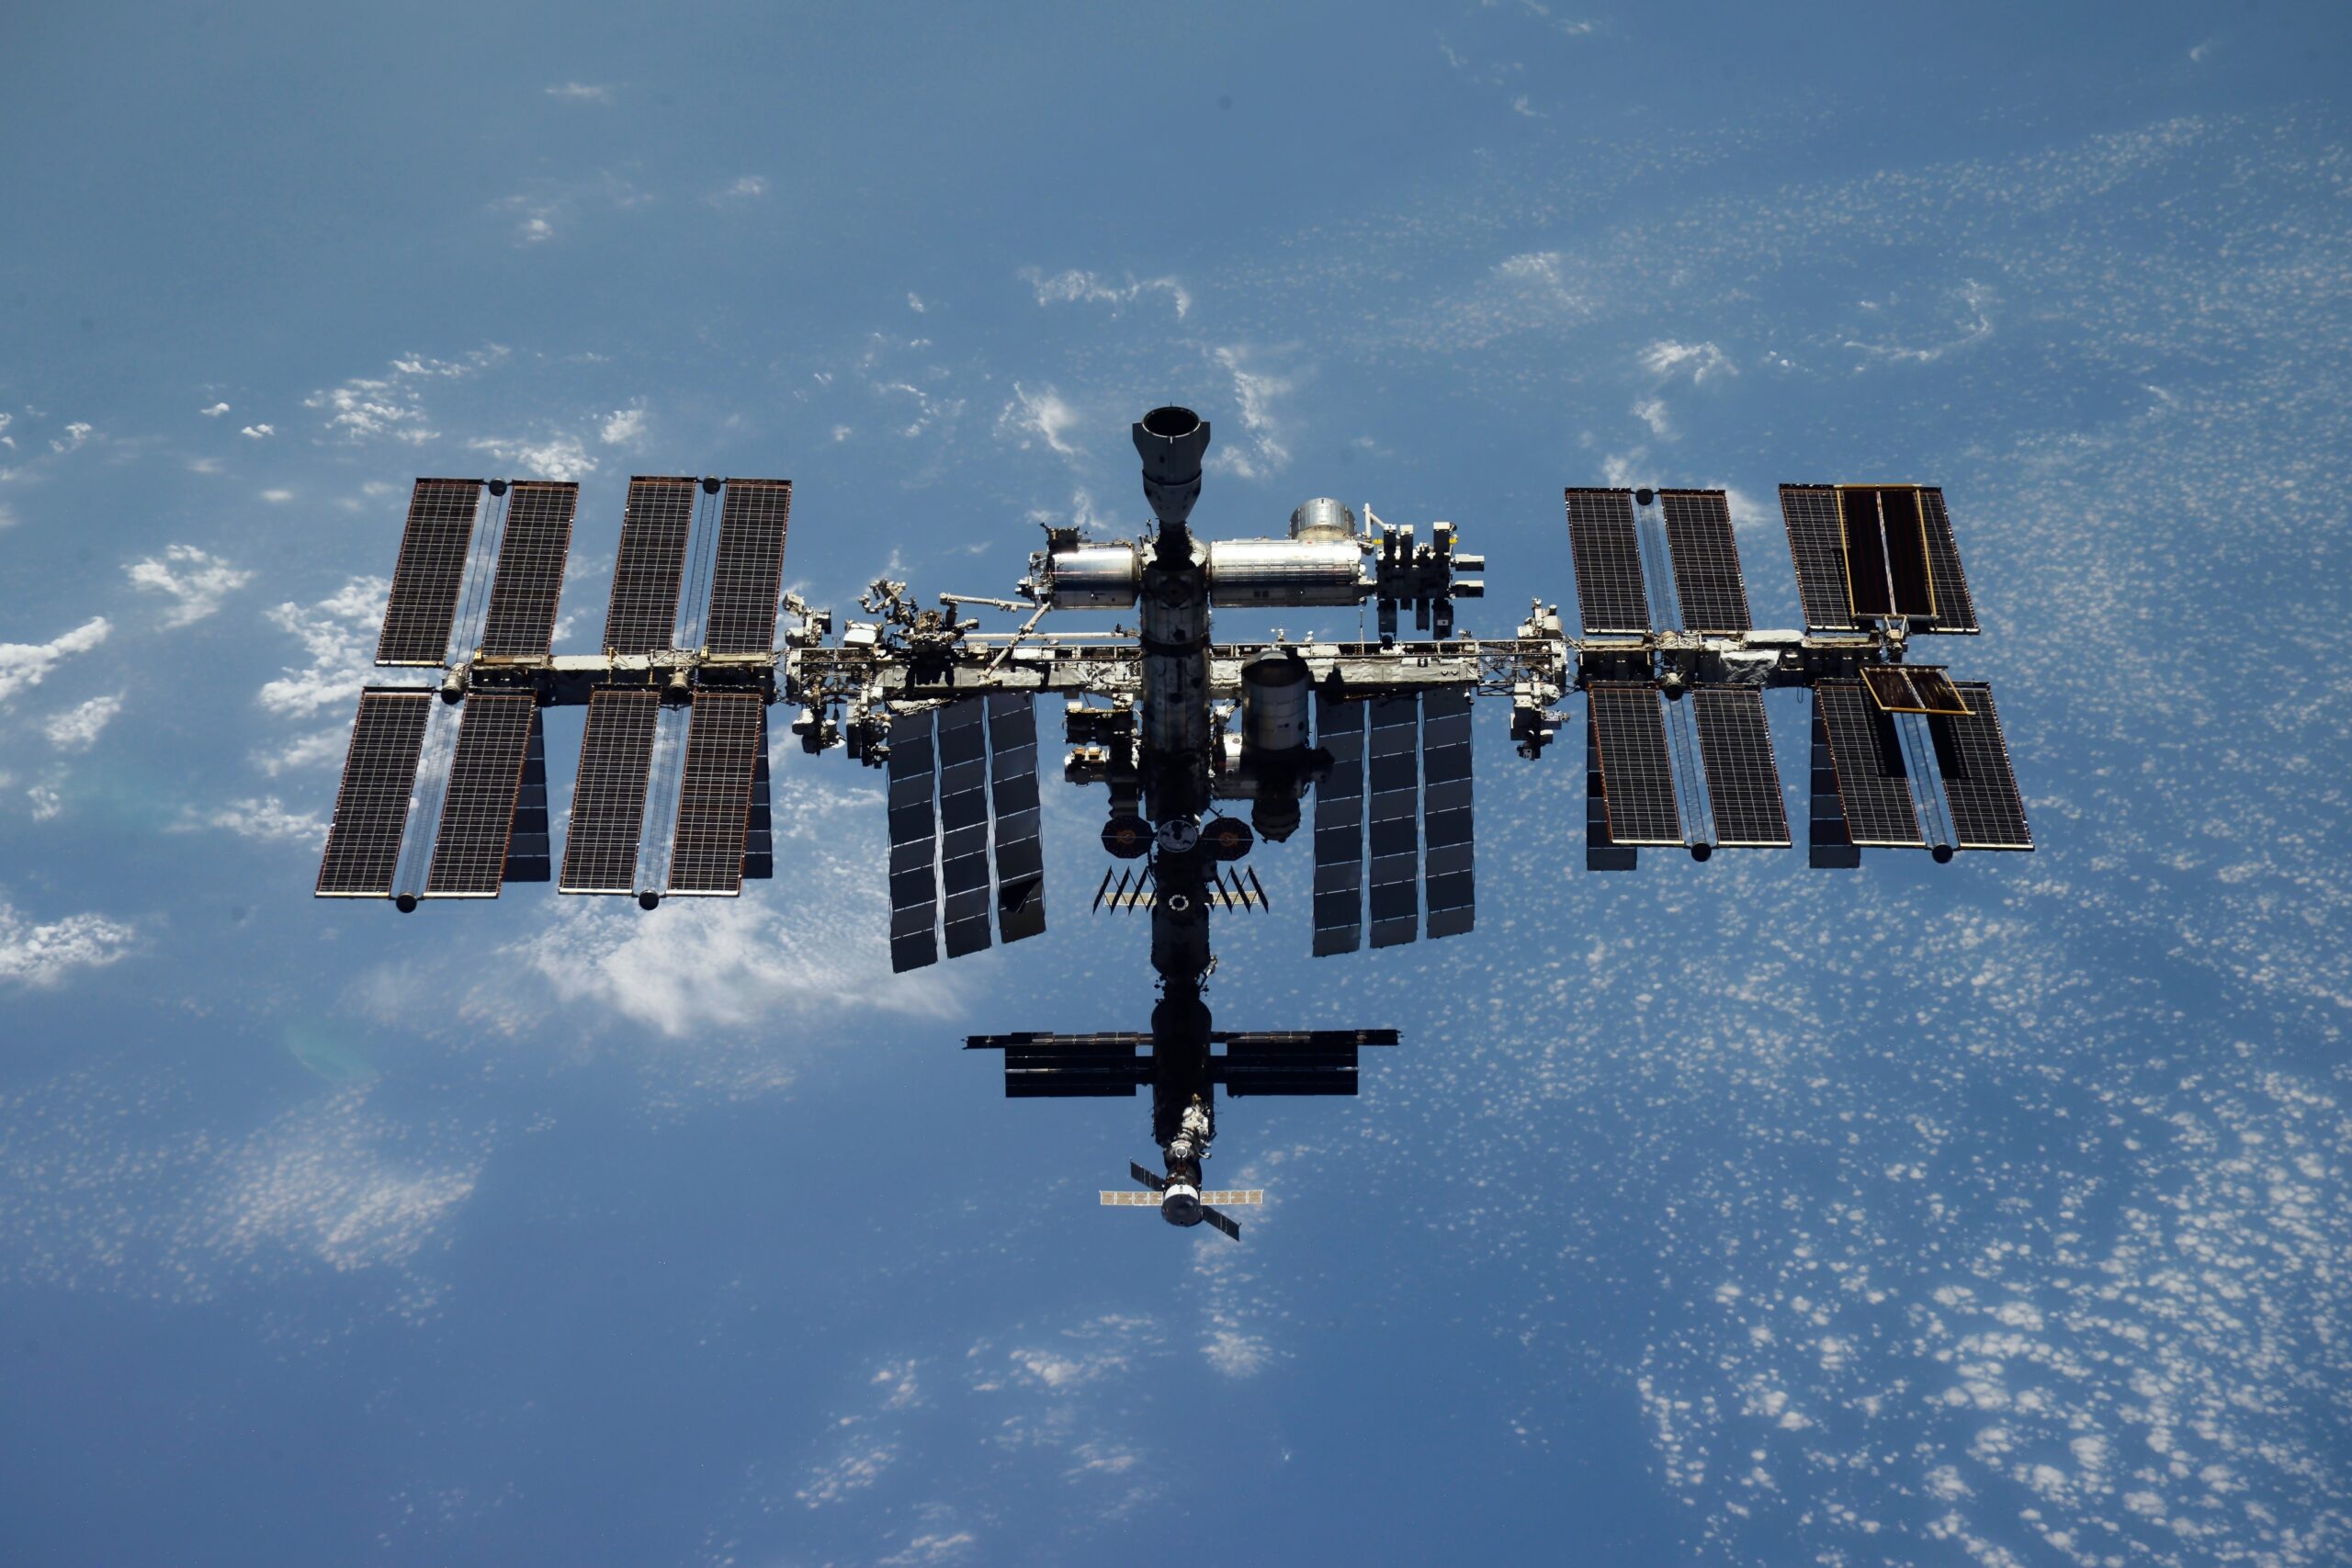 Αναβλήθηκε η εκτόξευση του Σογιούζ για την επιστροφή στη Γη τριών μελών του πληρώματος του Διεθνούς Διαστημικού Σταθμού